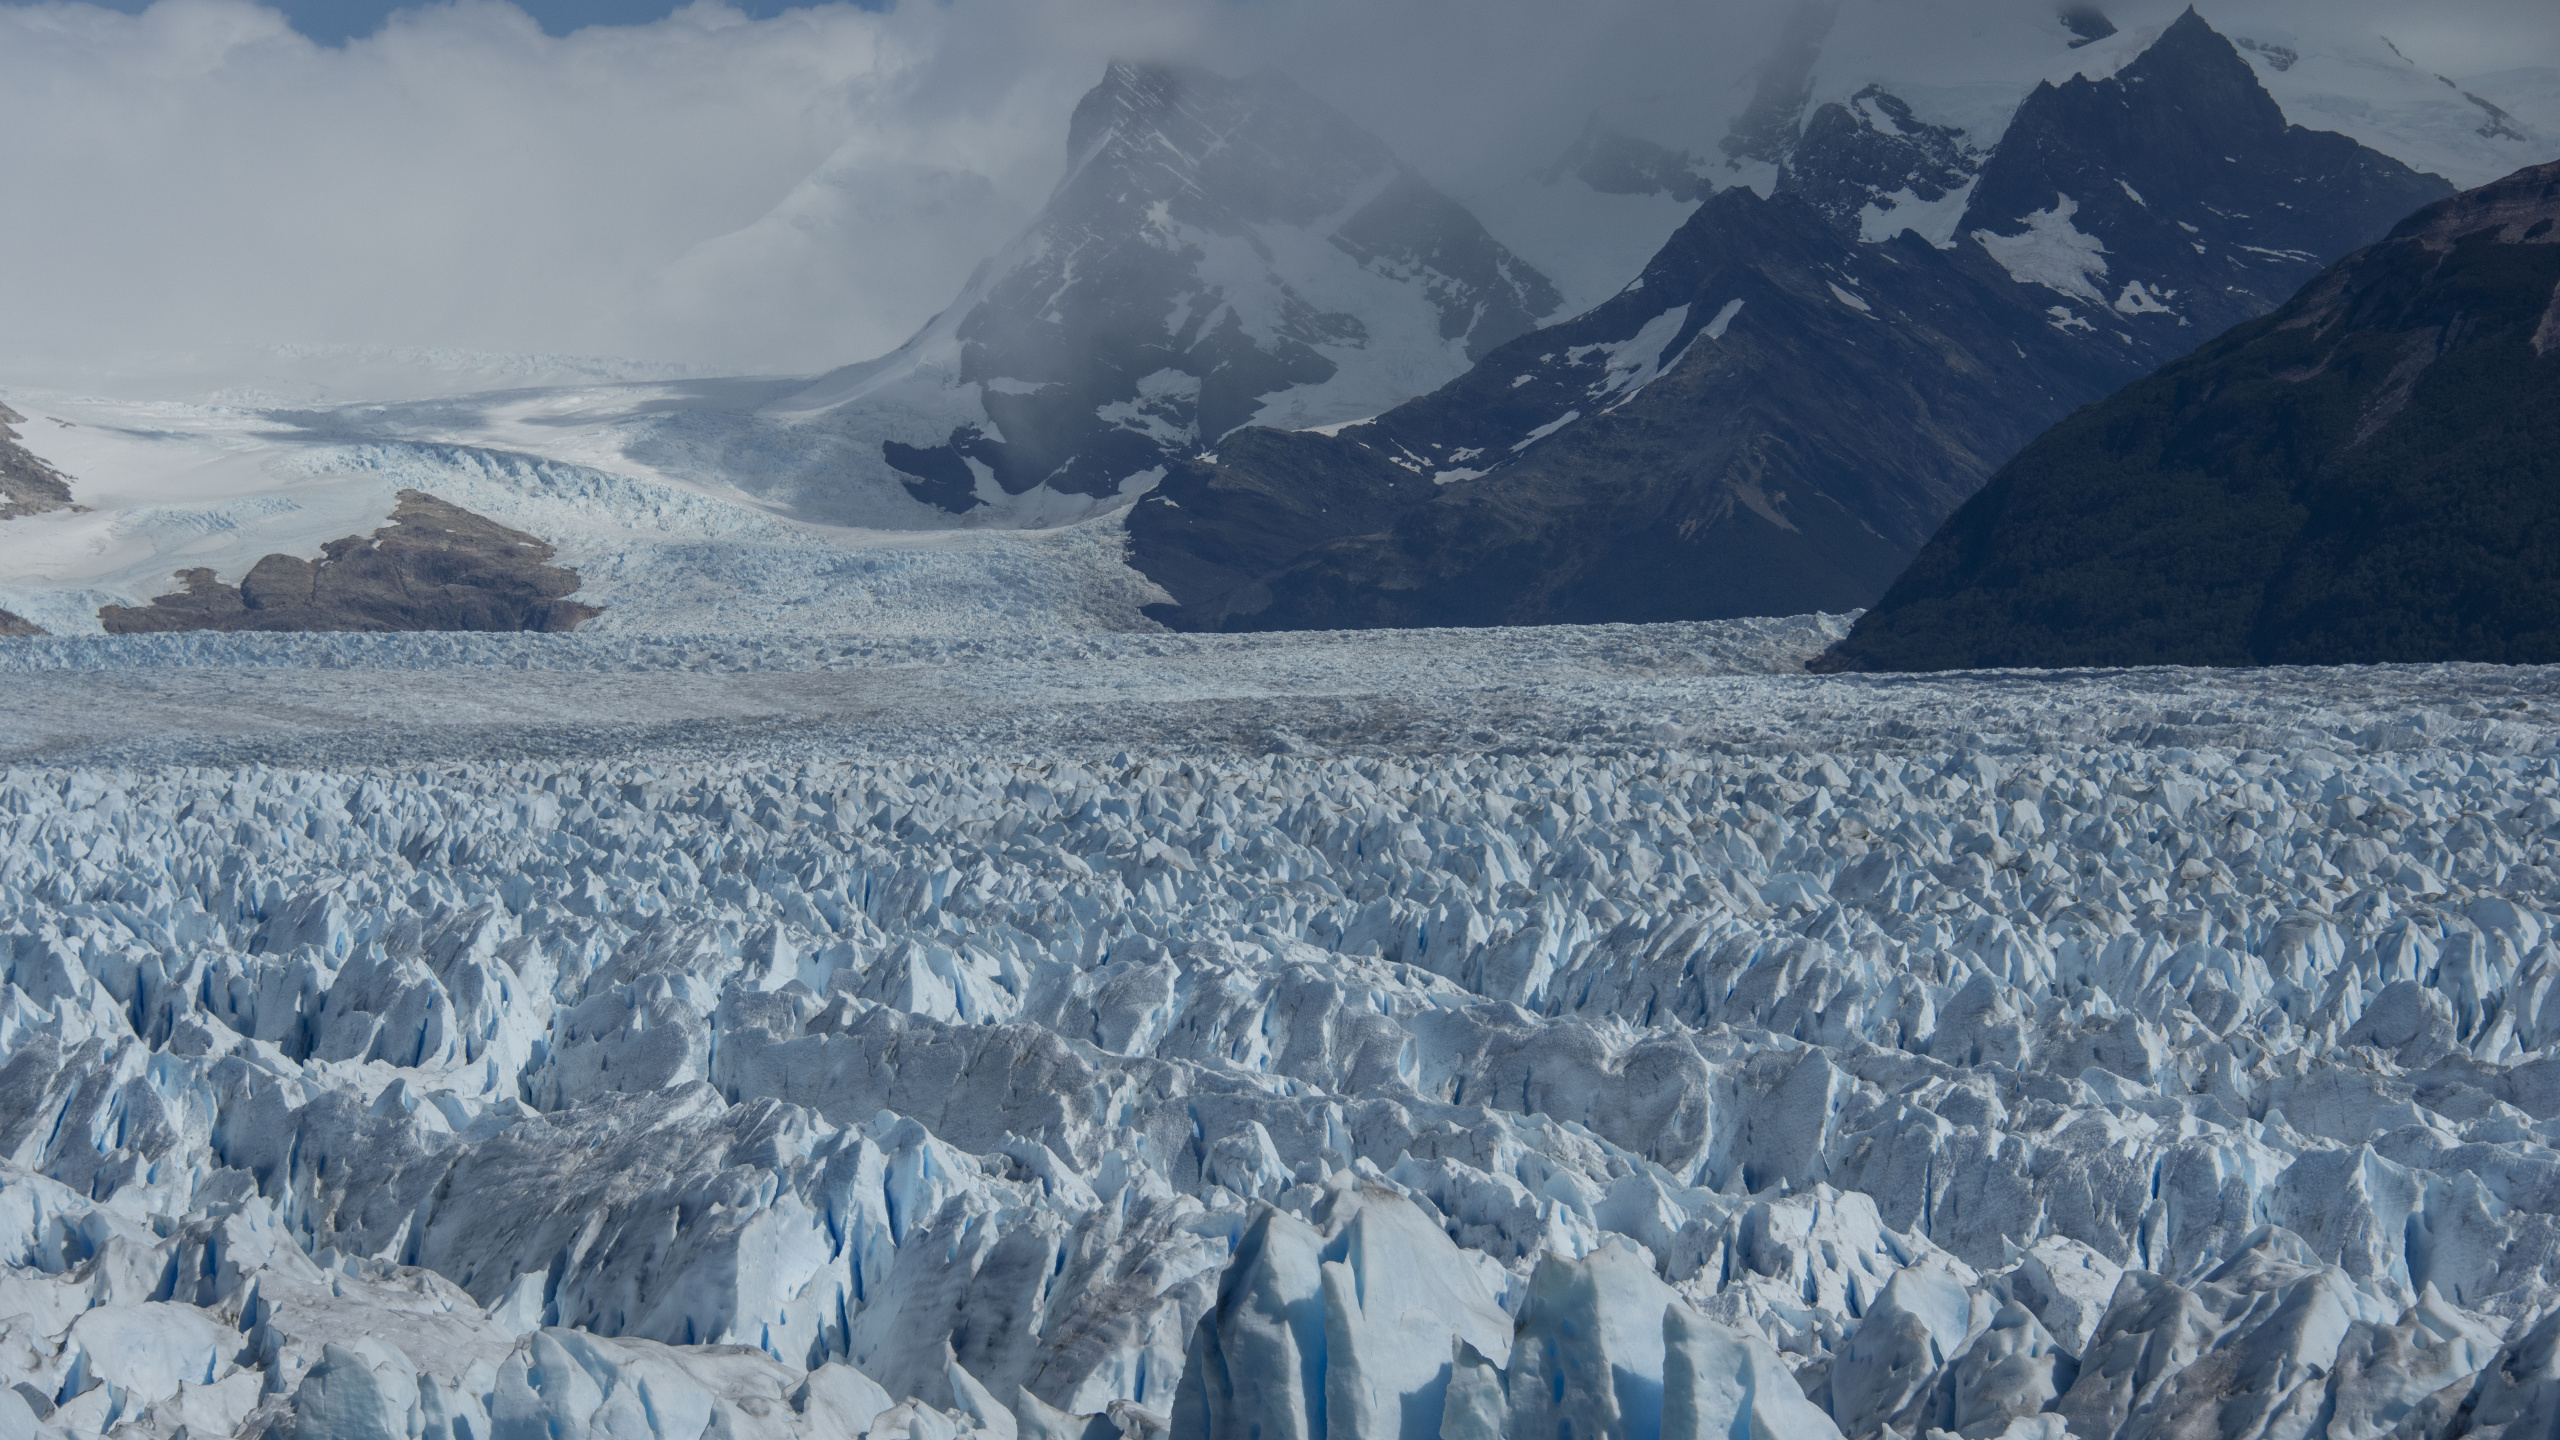 Gletscher, Eisberg, Gletschersee, Bergigen Landschaftsformen, Gletscher-landform. Wallpaper in 2560x1440 Resolution